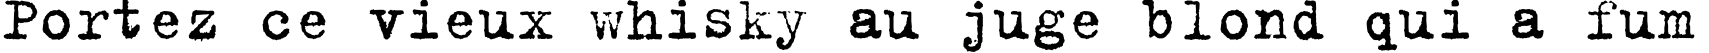 Пример написания шрифтом TrixieCyr-Plain текста на французском